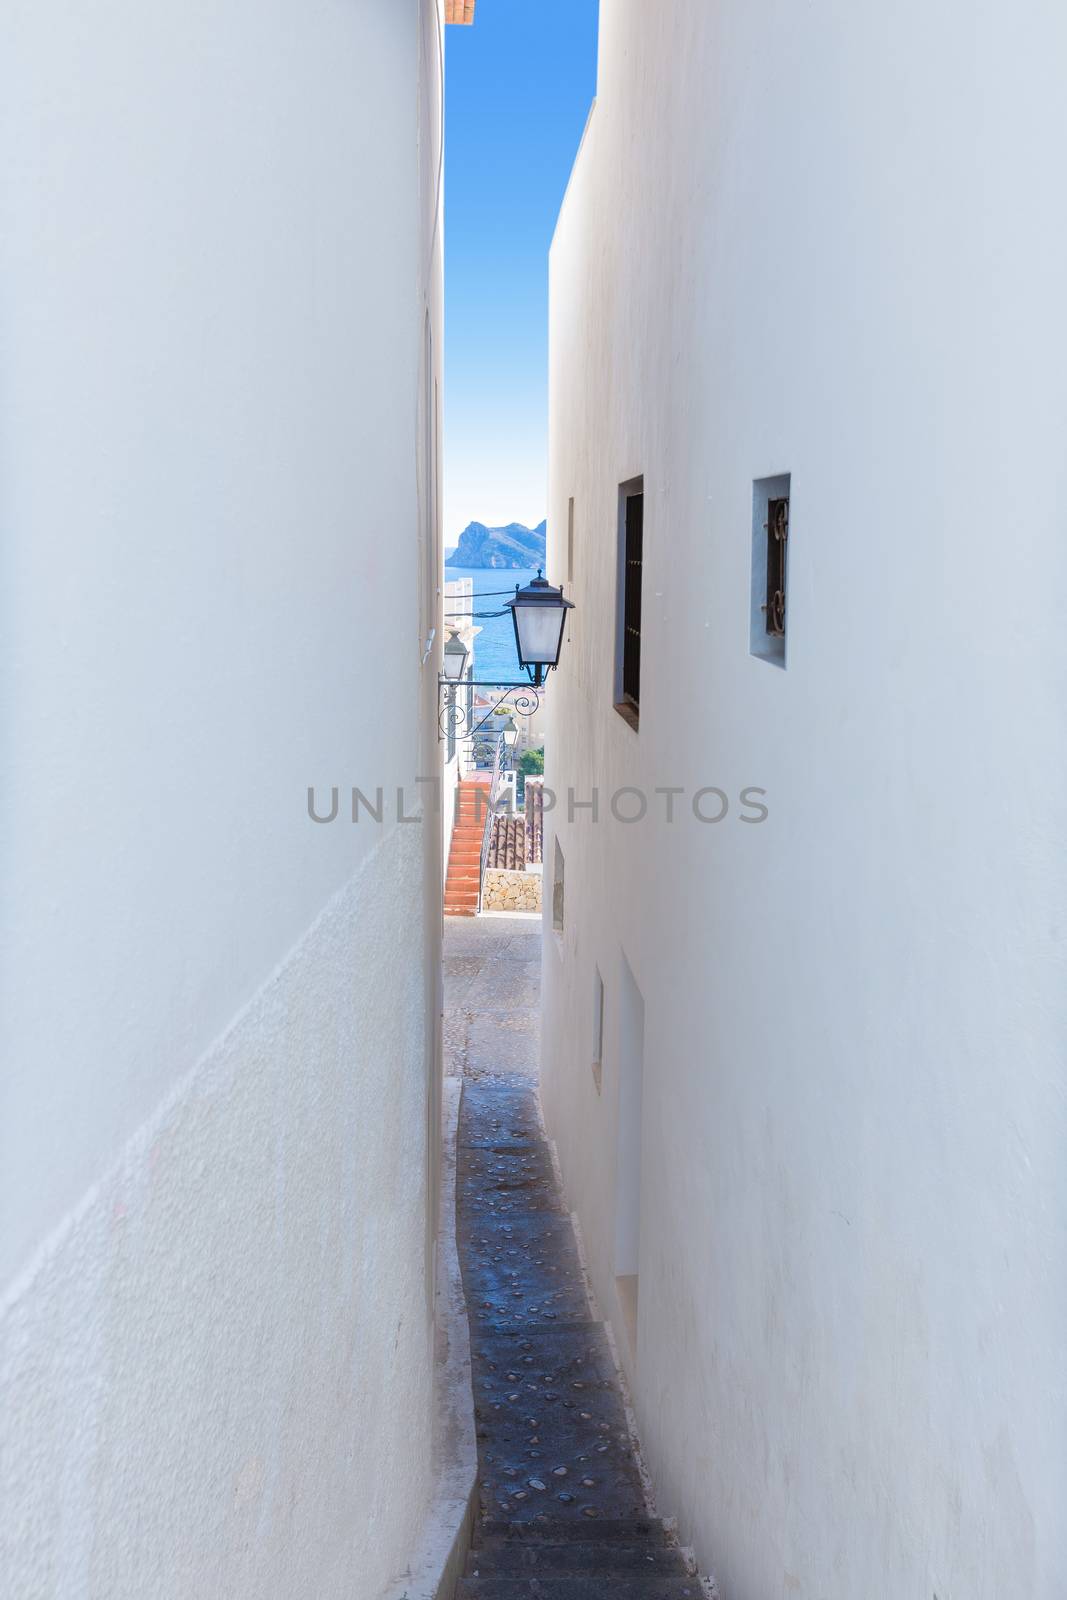 Altea old village white narrow street typical Mediterranean by lunamarina